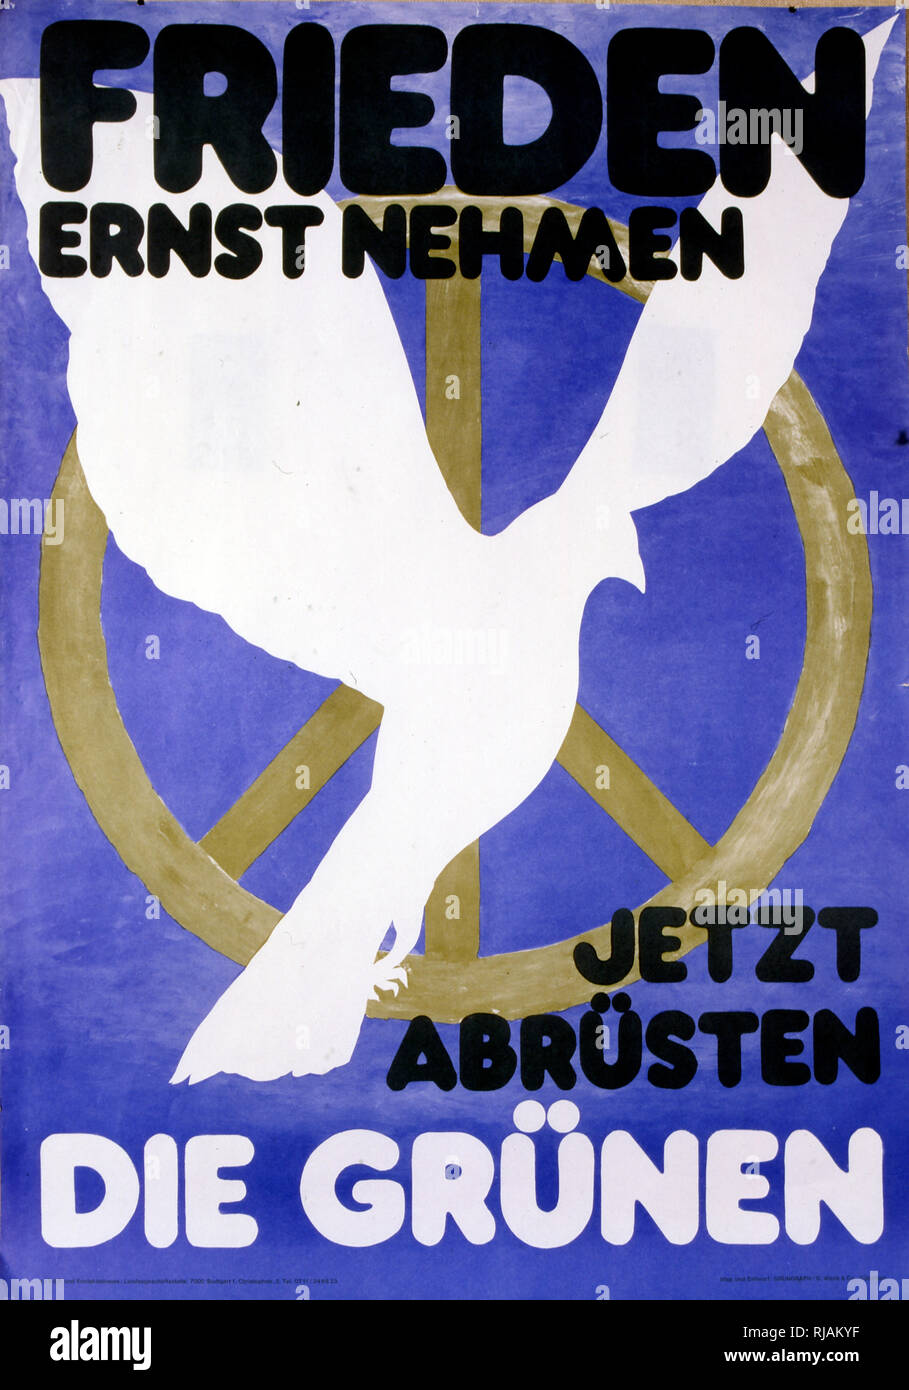 Frieden Ernst nehmen, jetzt abrusten "Frieden ernst nehmen, jetzt Entwaffnen" Poster mit den deutschen Grünen ausgestellt, die für die nukleare Abrüstung 1981 Stockfoto